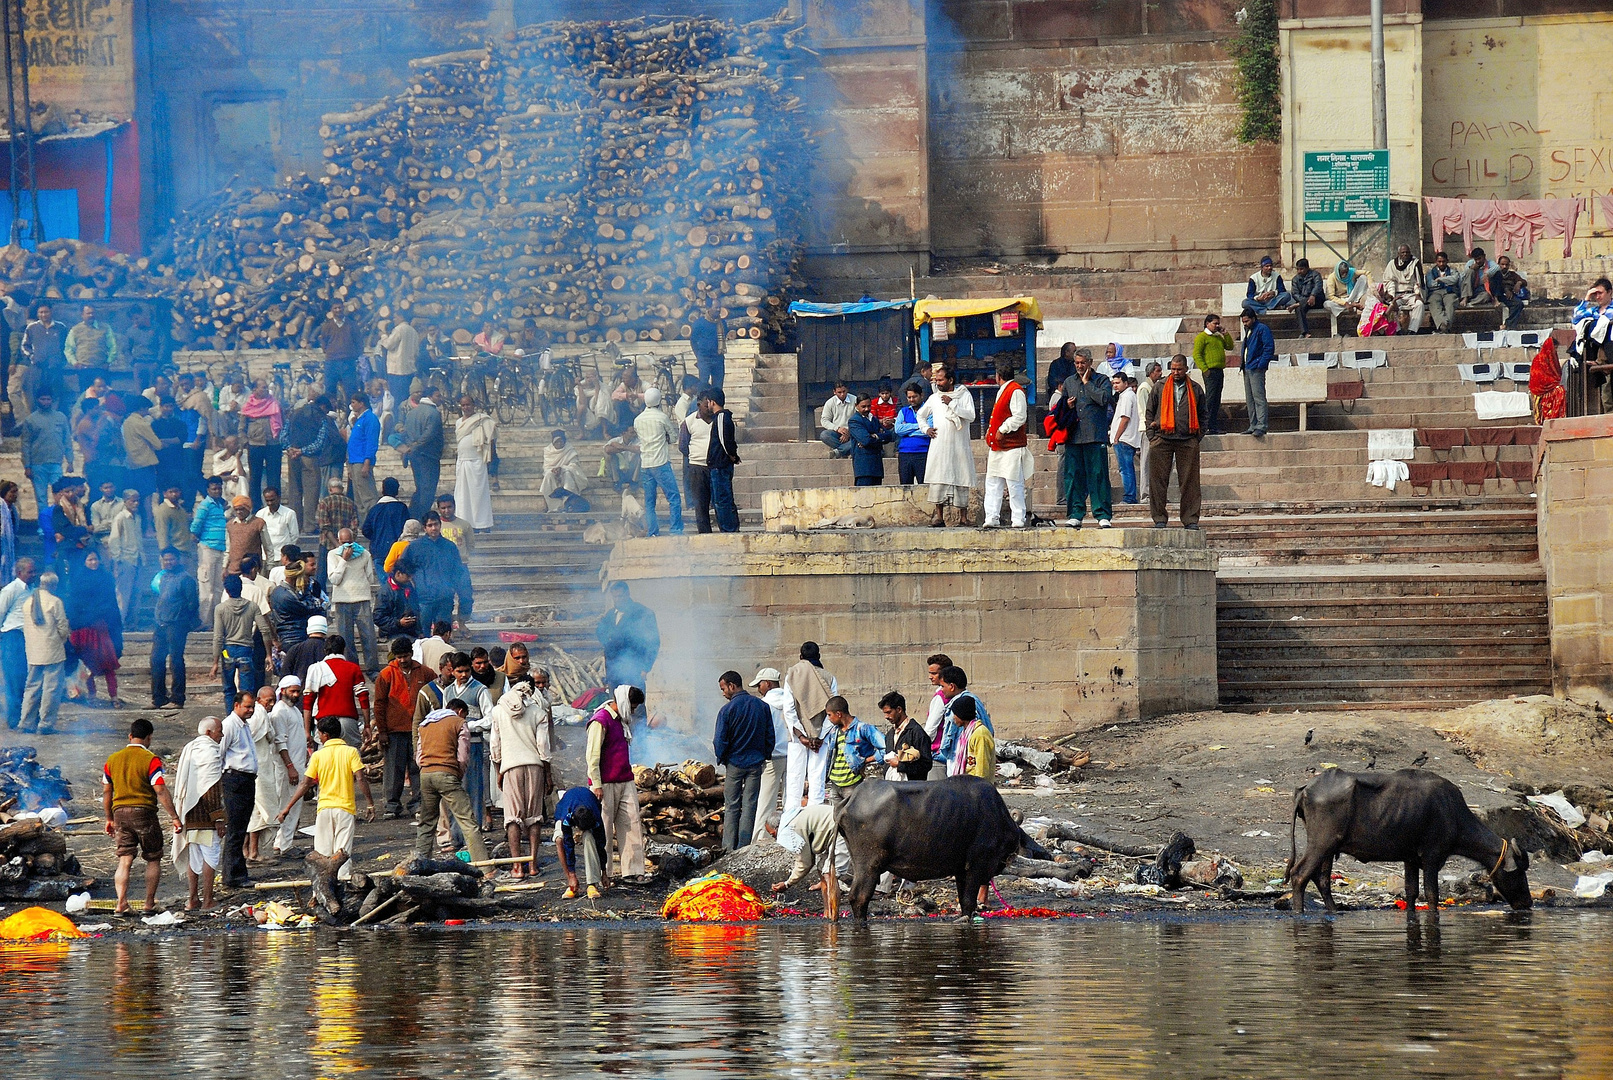 Crematorium on Ganges River